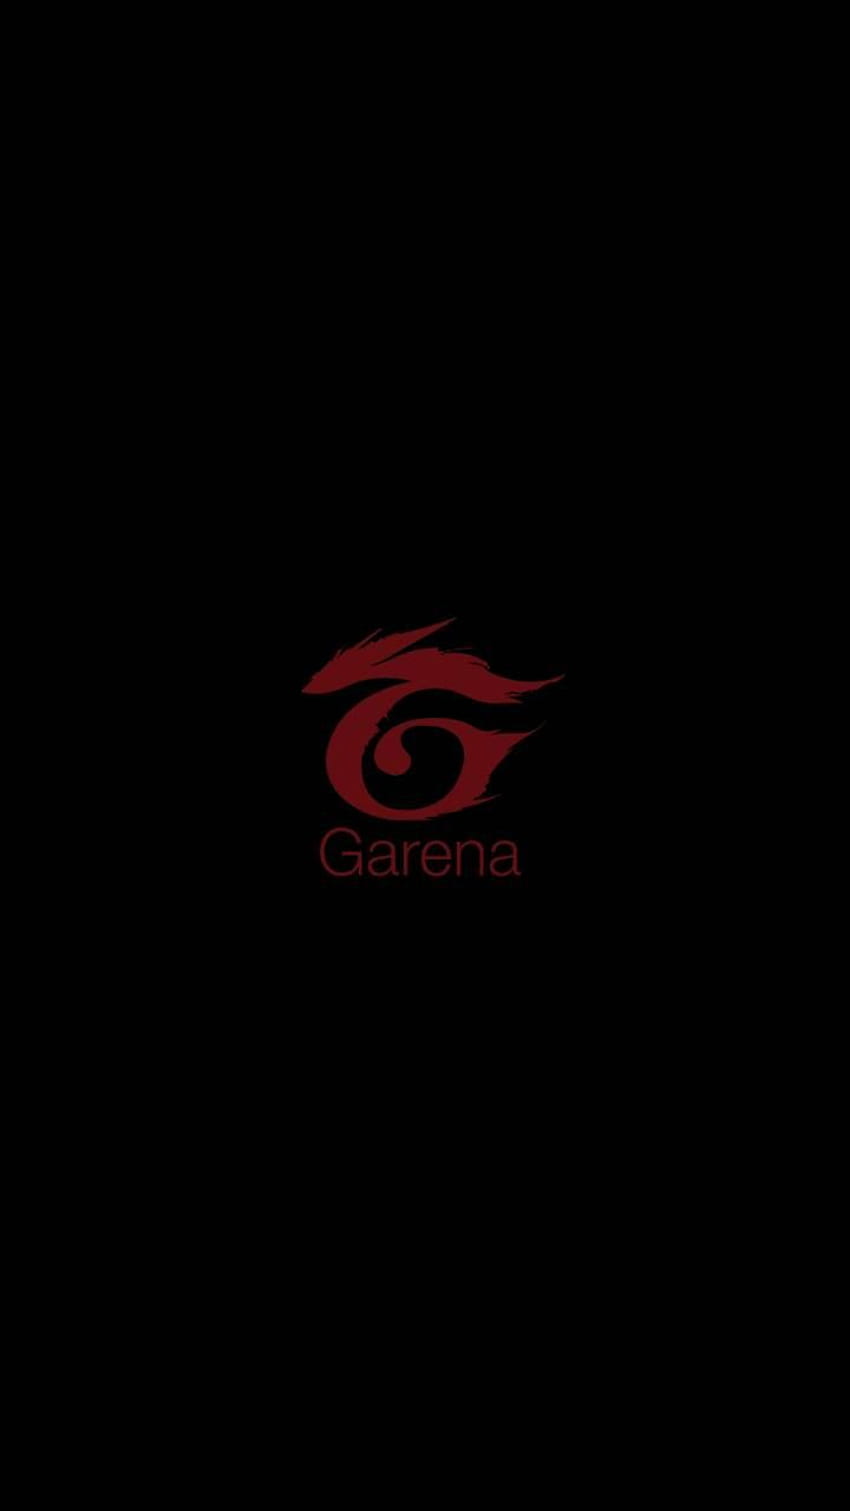 Garena | Ảnh ấn tượng, Ảnh tường cho điện thoại, Hình nền game